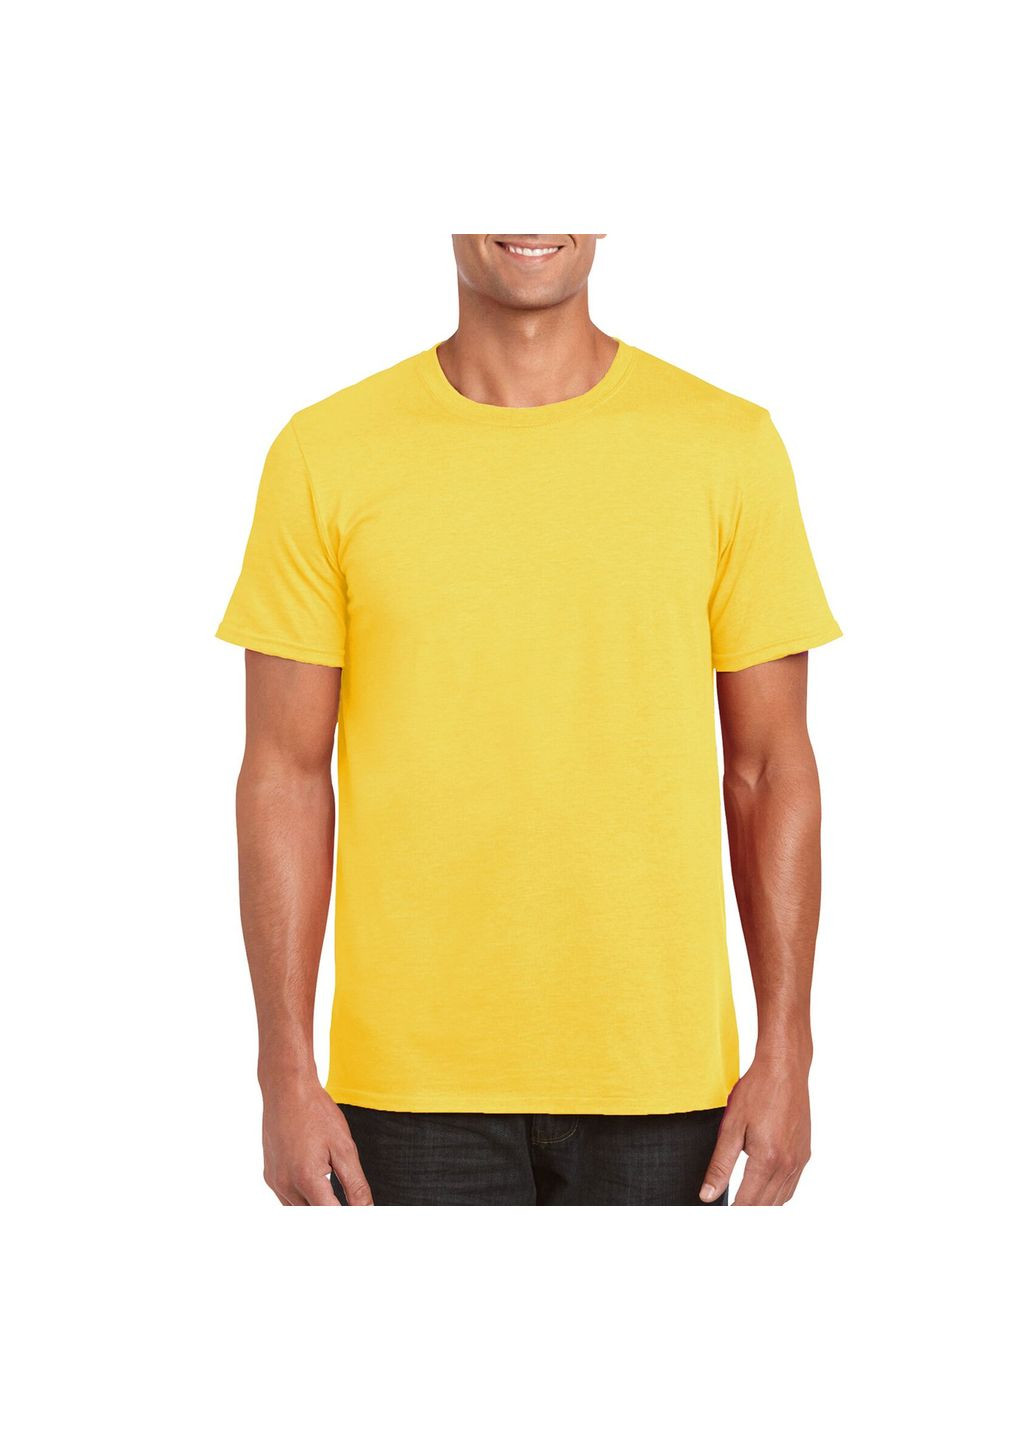 Жовта футболка чоловіча однотонна жовта 64000-122c з коротким рукавом Gildan Softstyle